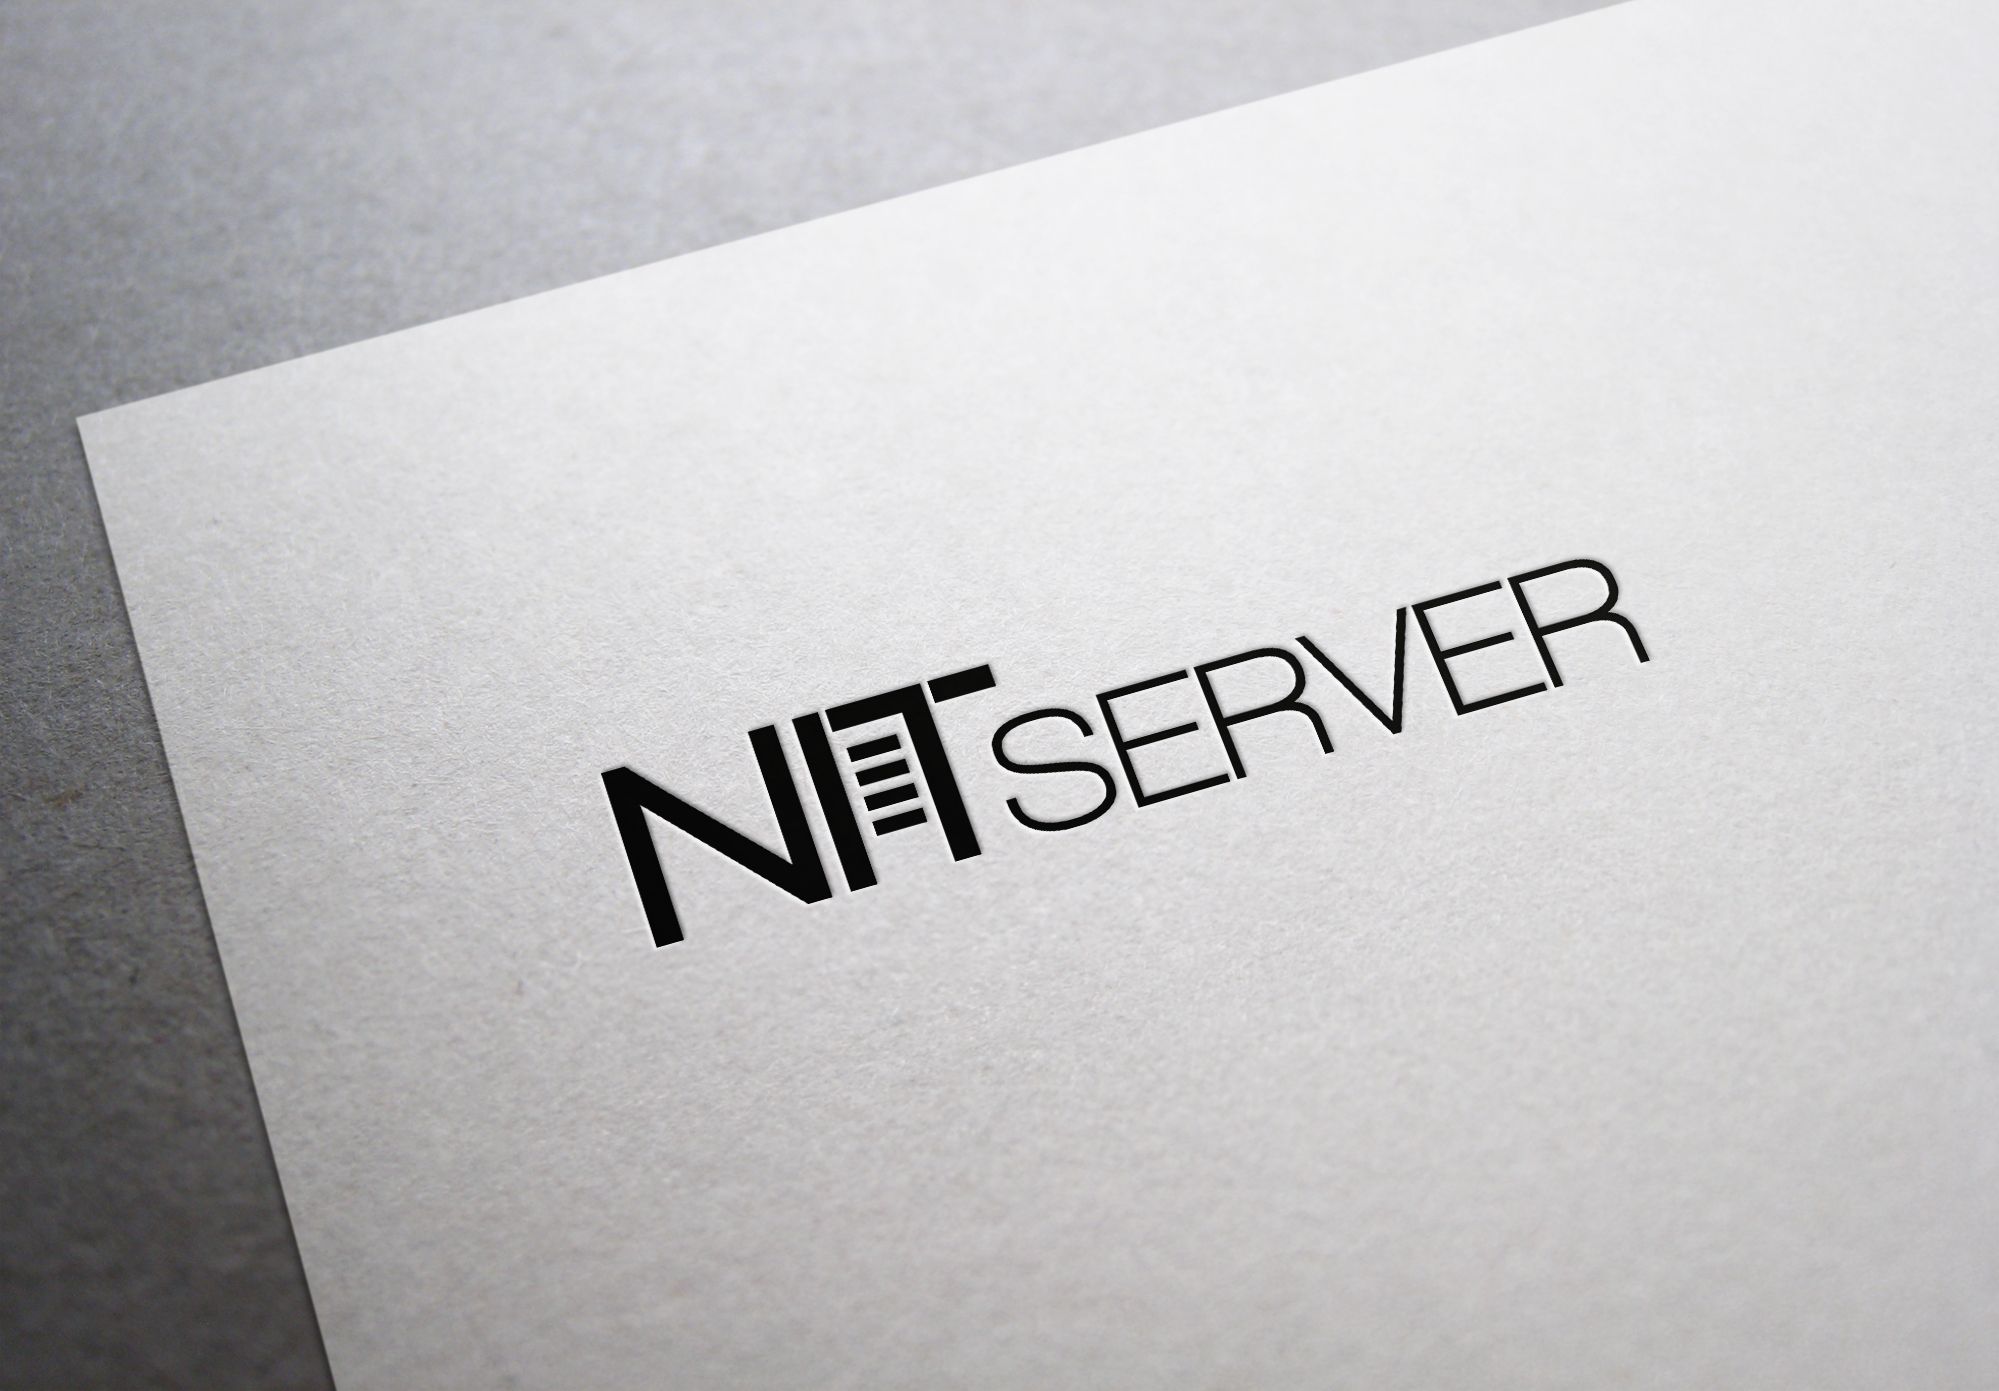 Логотип компании NITserver - аренда серверов - дизайнер U4po4mak